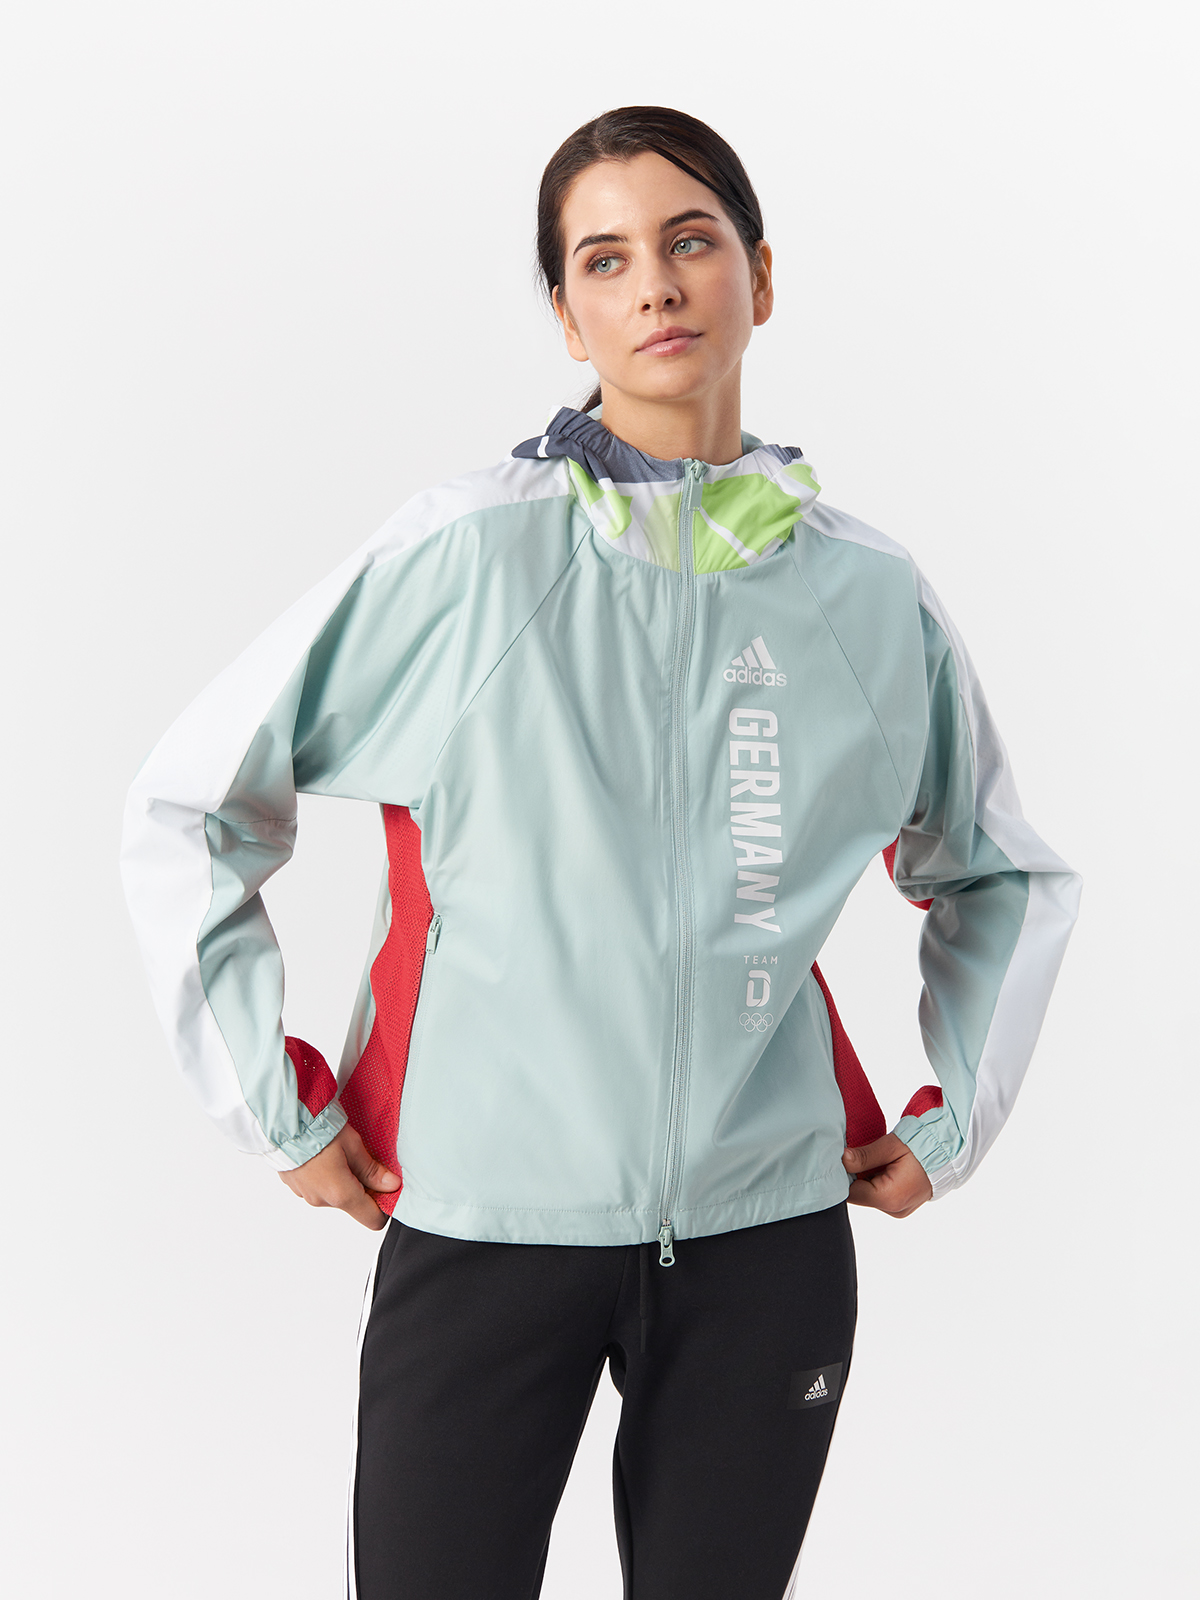 Ветровка Adidas для женщин, на молнии, FS0074, Grntnt, 42